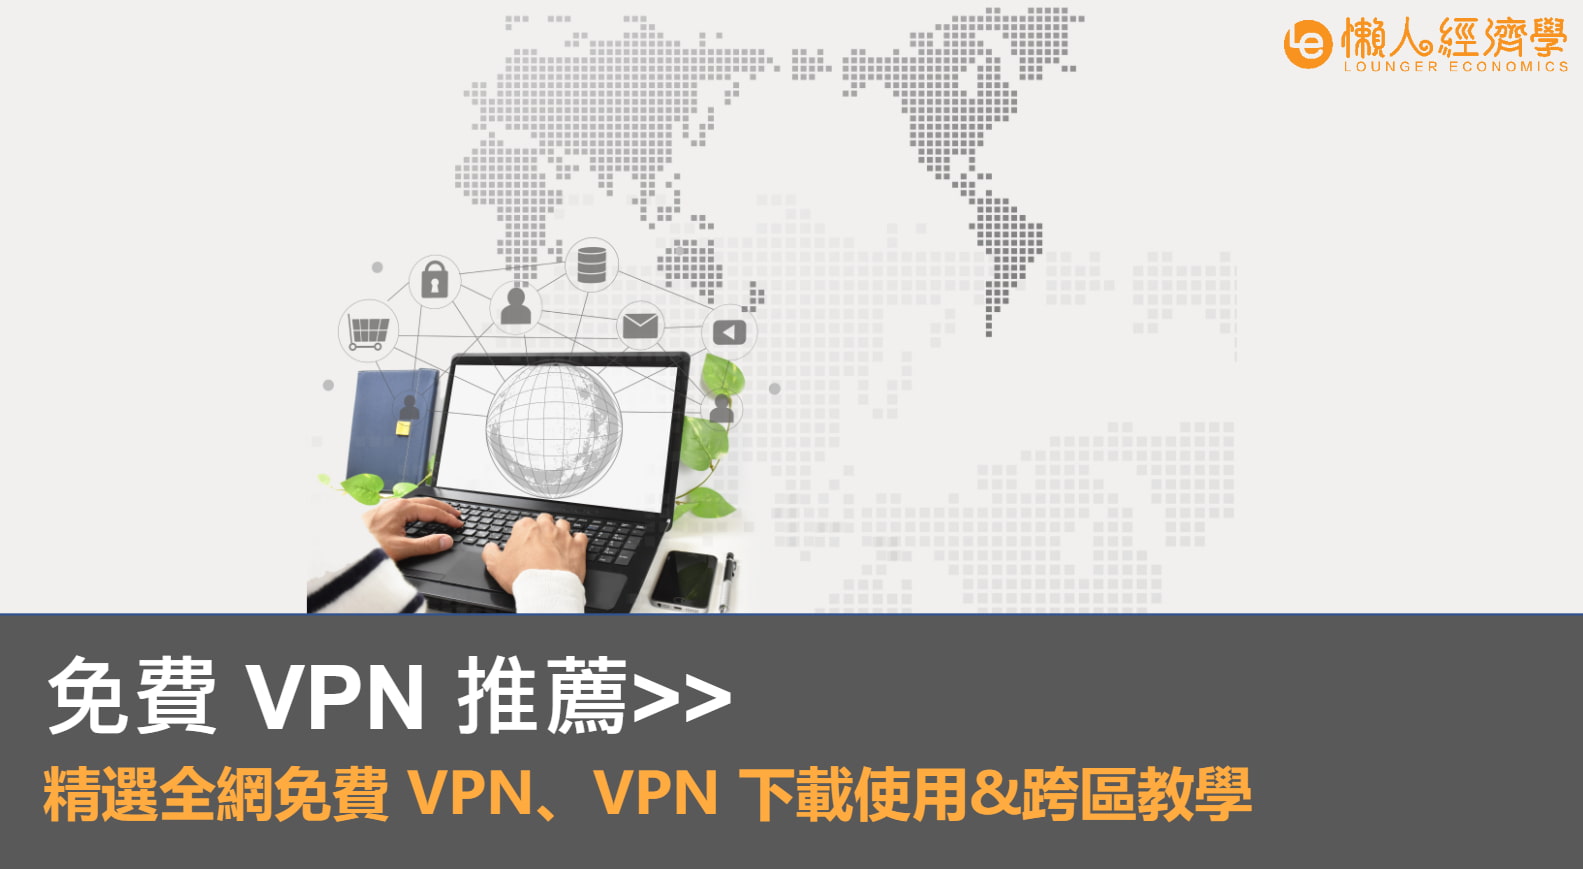 免費 VPN 軟體推薦｜精選全網免費 VPN 、VPN 下載試用教學